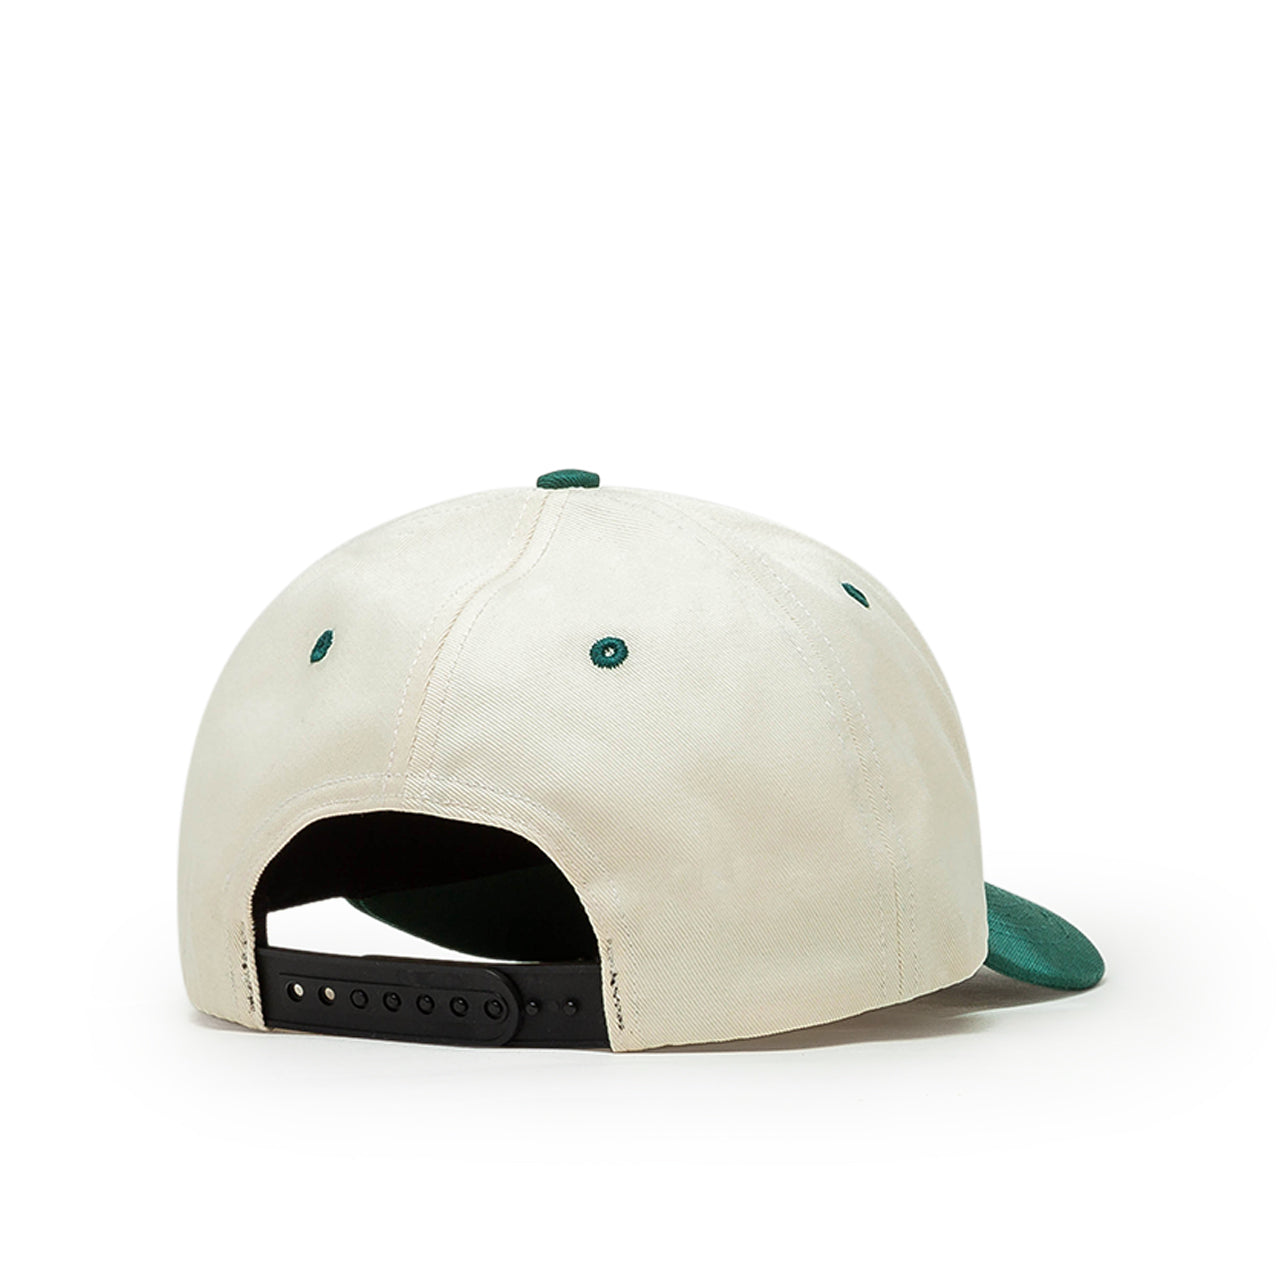 rassvet woven logo cap (white / green)